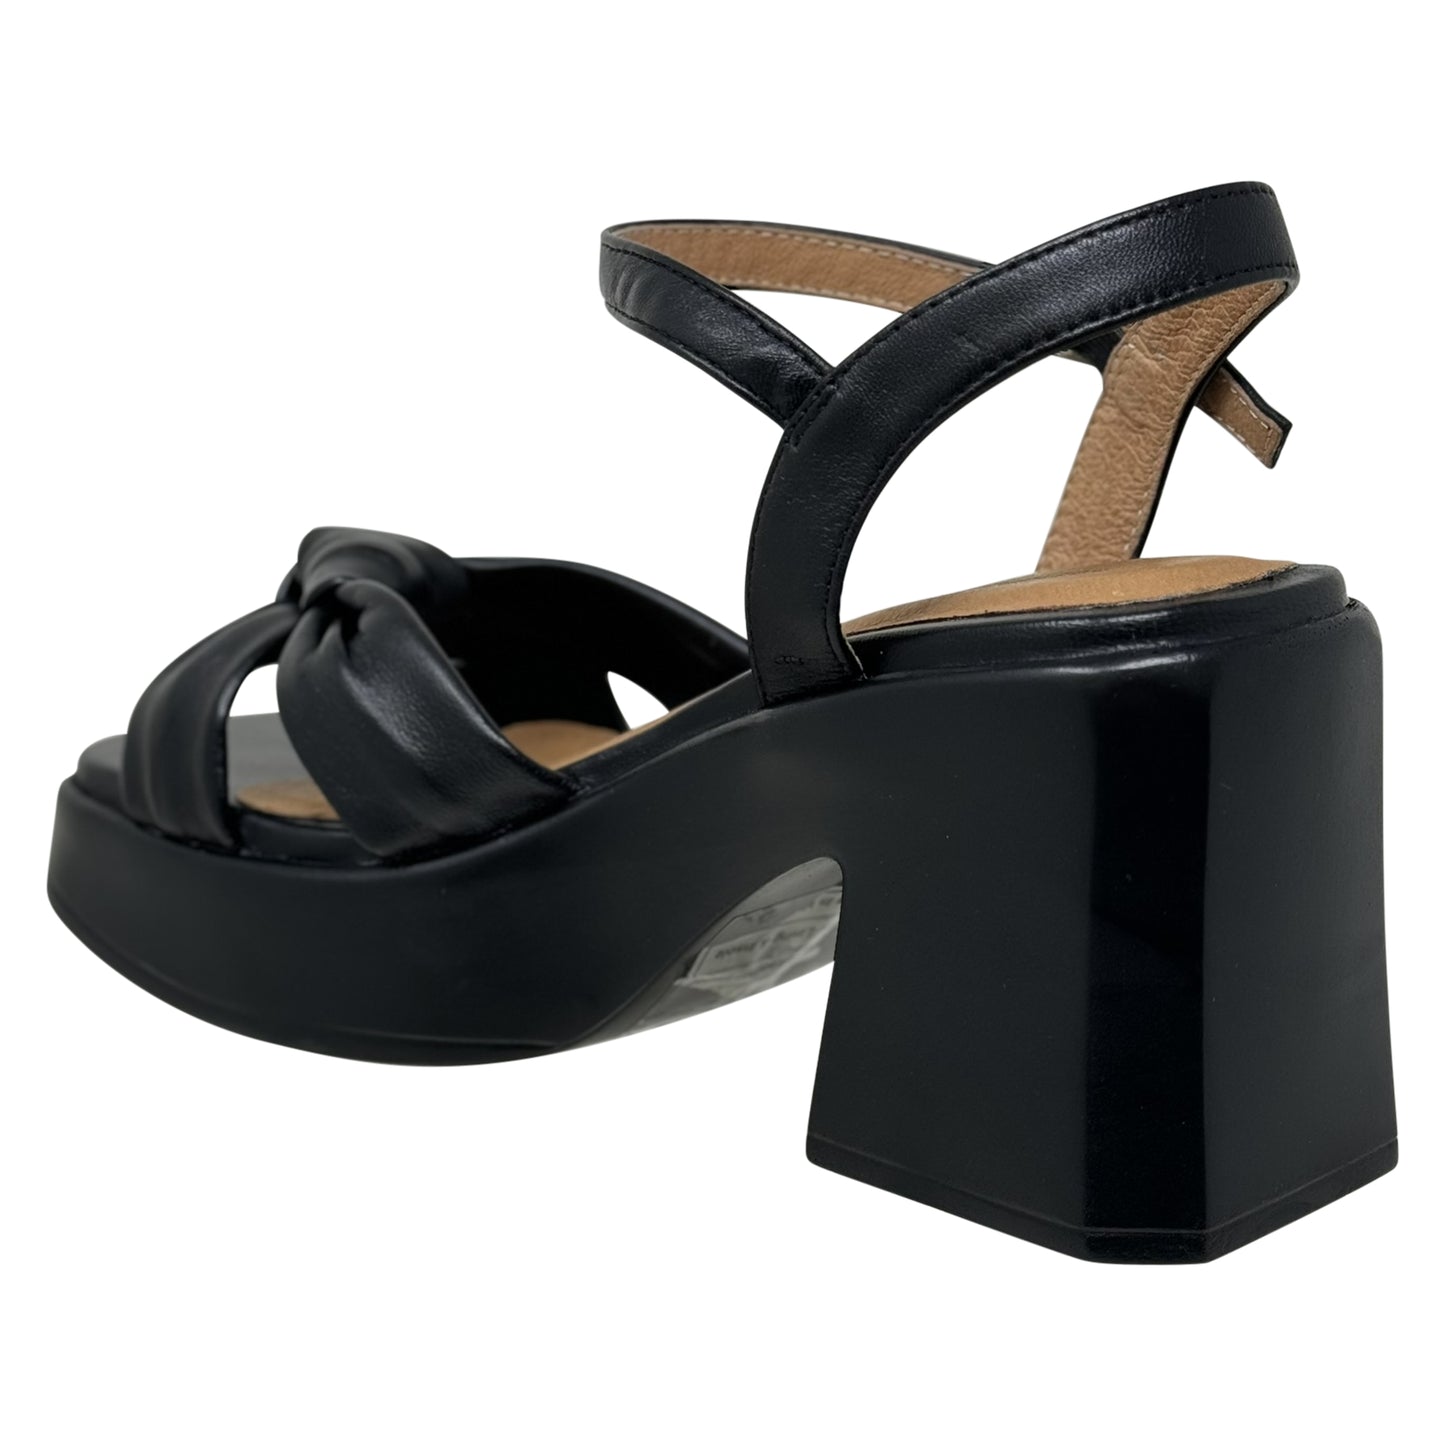 SOBEYO Criss-Cross Bell-Shape Block Heels Ankle Strap Black Leather